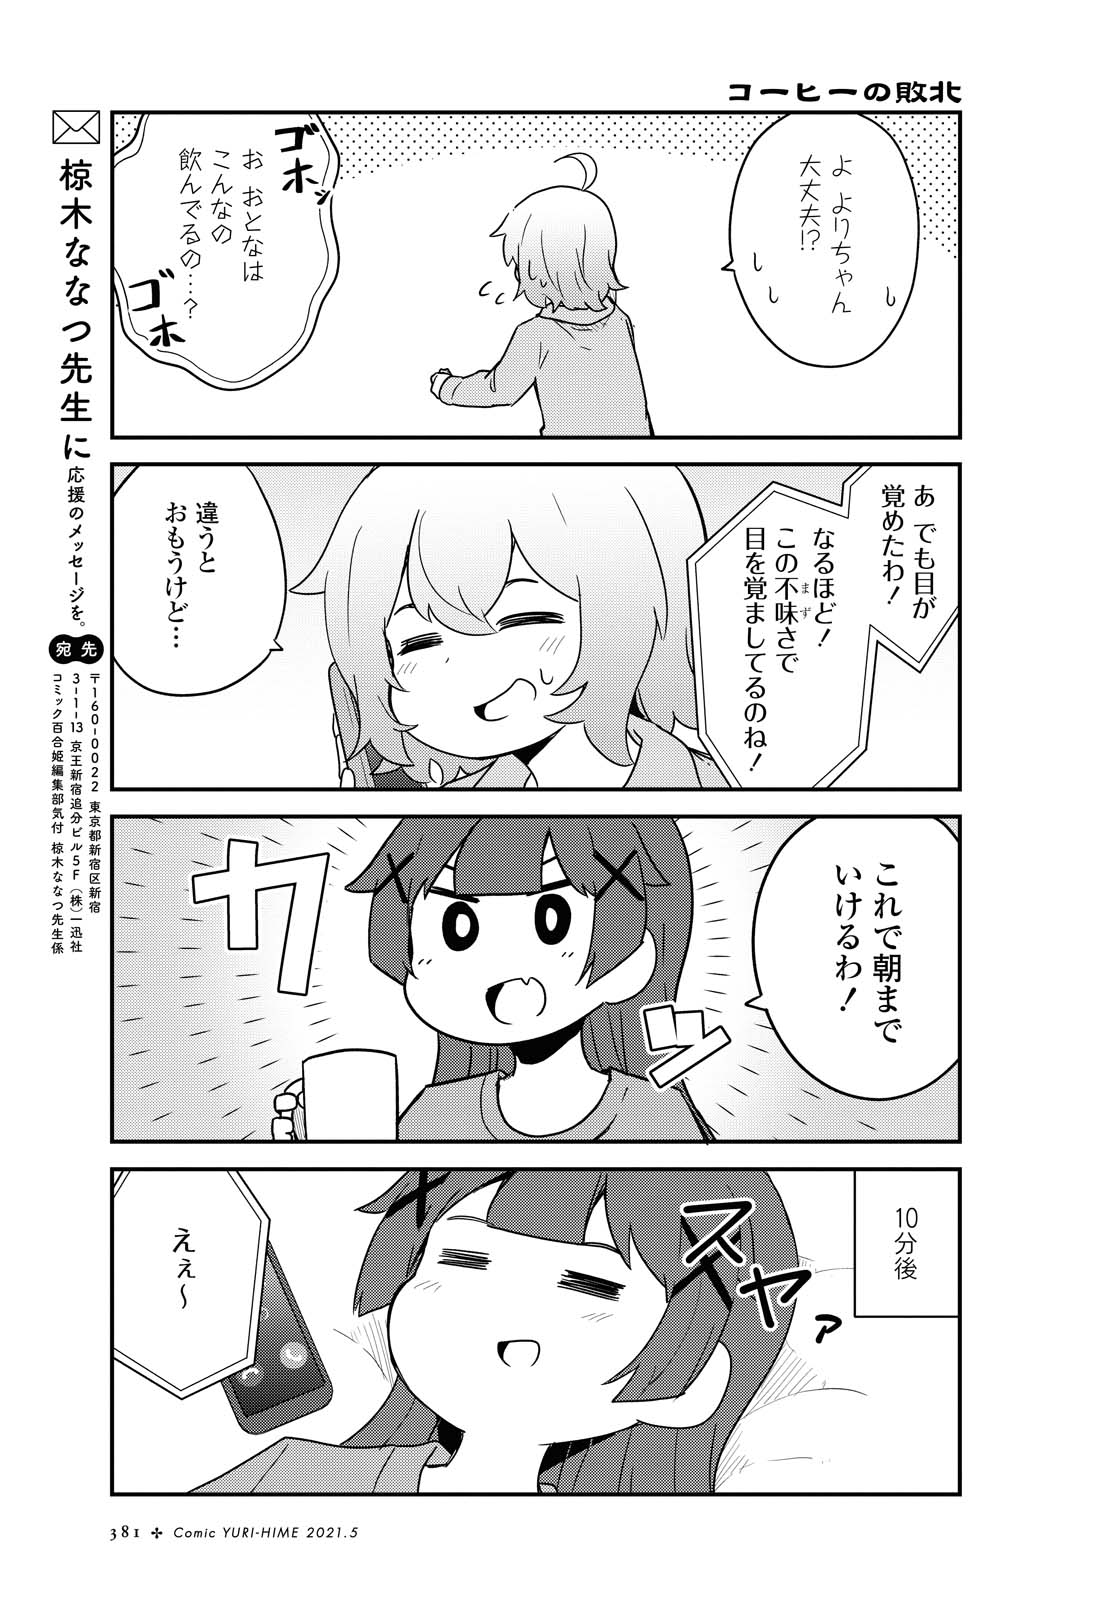 Watashi ni Tenshi ga Maiorita! - Chapter 80 - Page 7